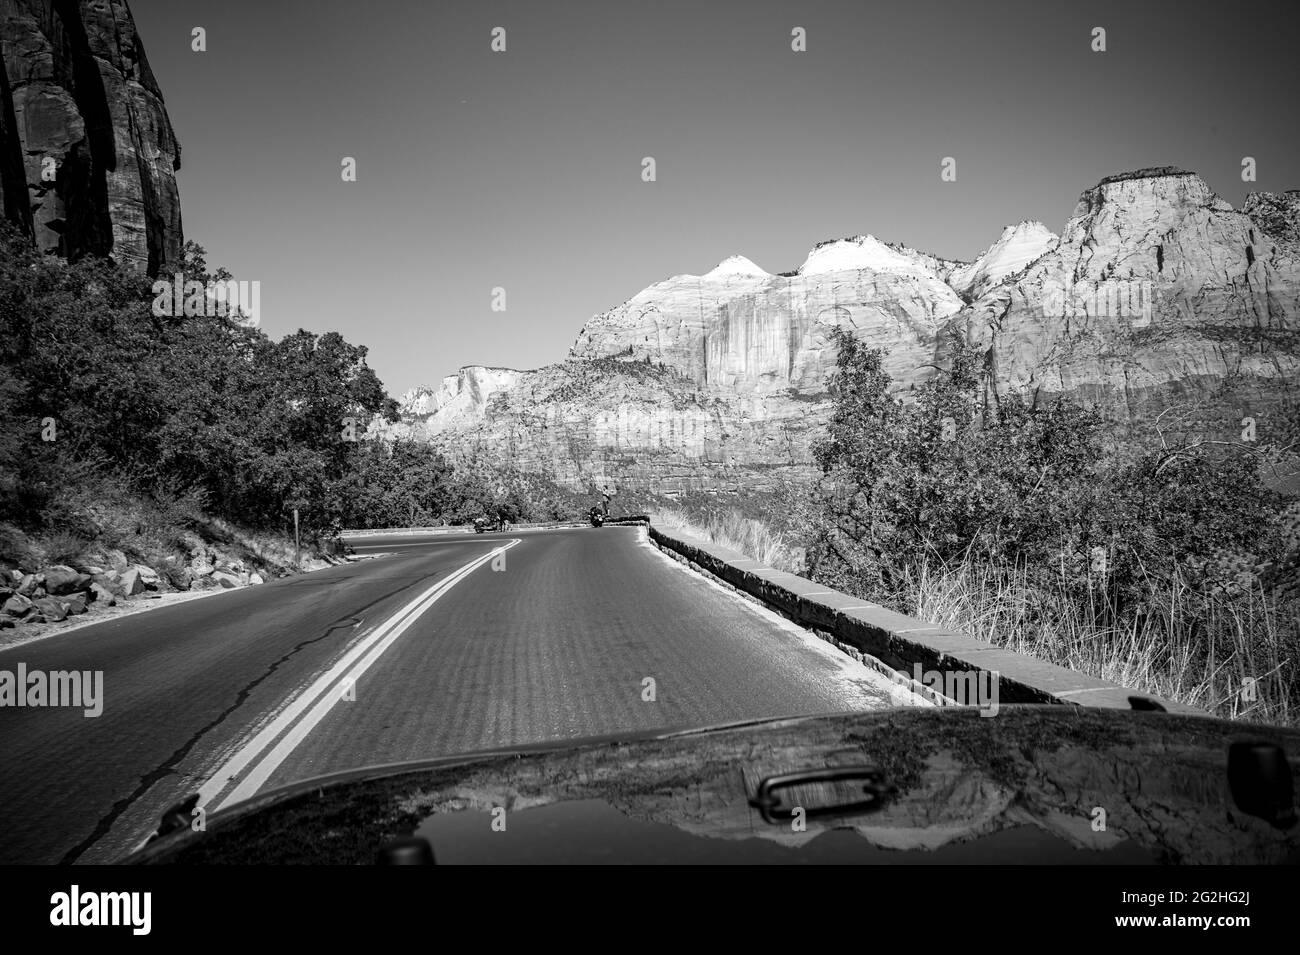 Autopista Mount Carmel en dirección al túnel Zion Mount Carmel - Parque Nacional Zion, Utah, Estados Unidos Foto de stock